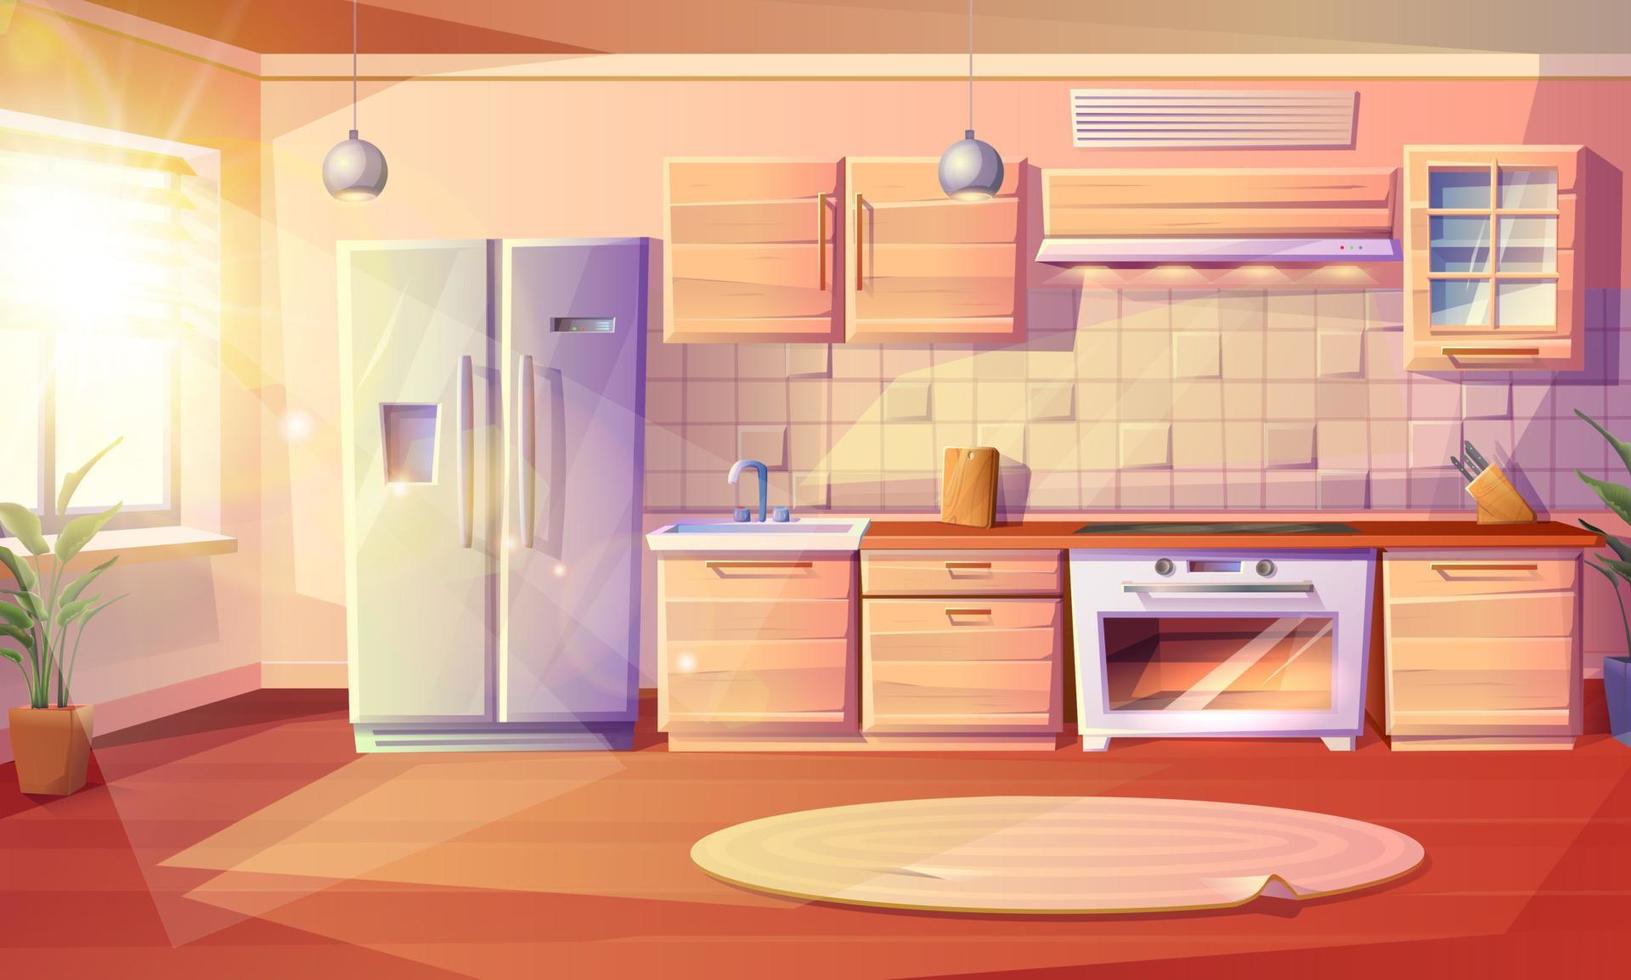 modern vector tekenfilm stijl illustratie van keuken kamer met koelkast, oven met een fornuis en kookplaat, wasbak, kabinetten en afzuigkap kap met keuken huishoudelijke apparaten.